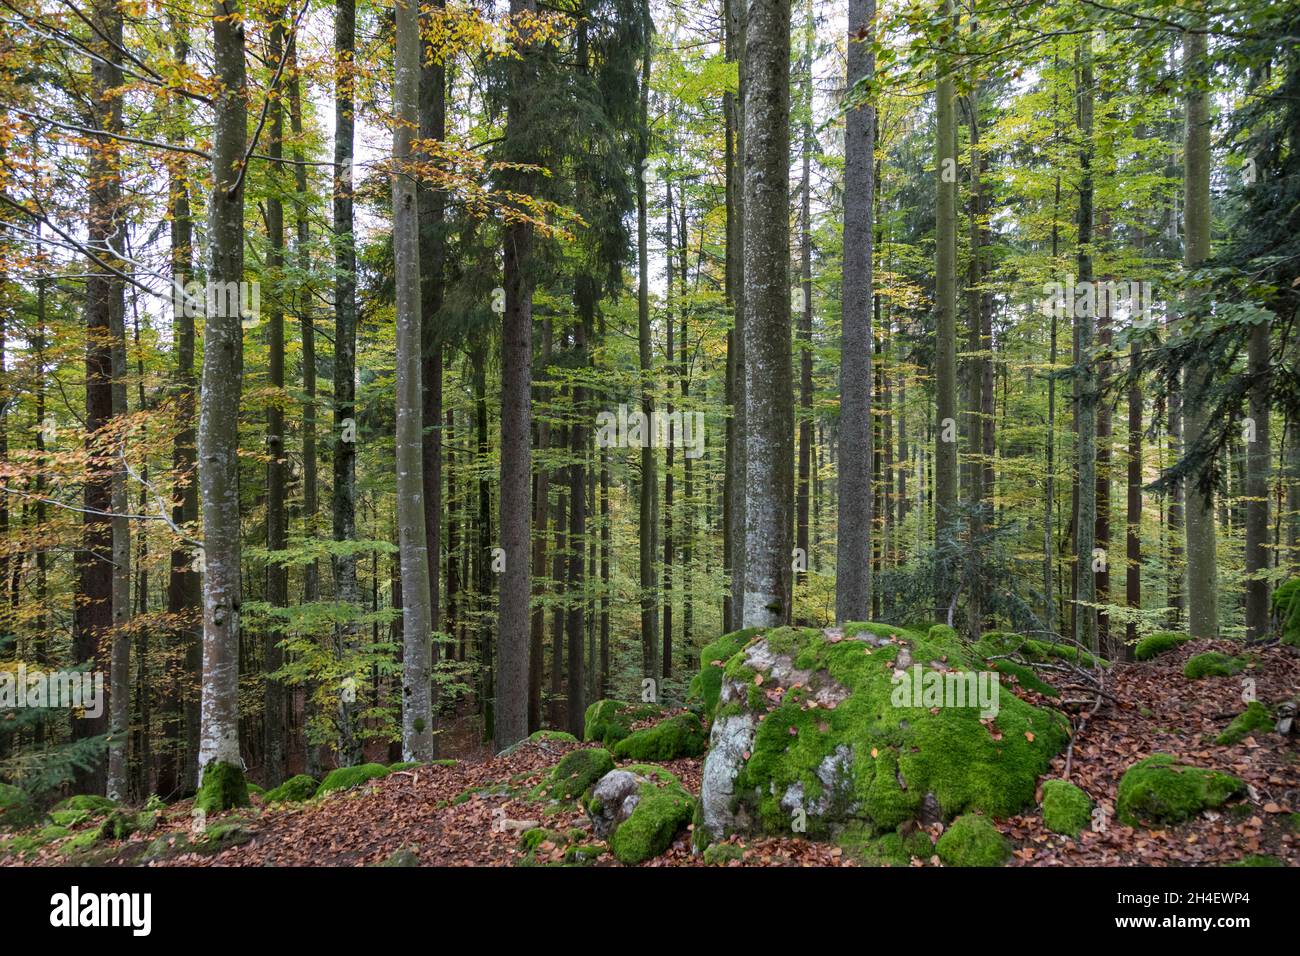 Buchenmischwald, forêt mixte de hêtre Banque D'Images